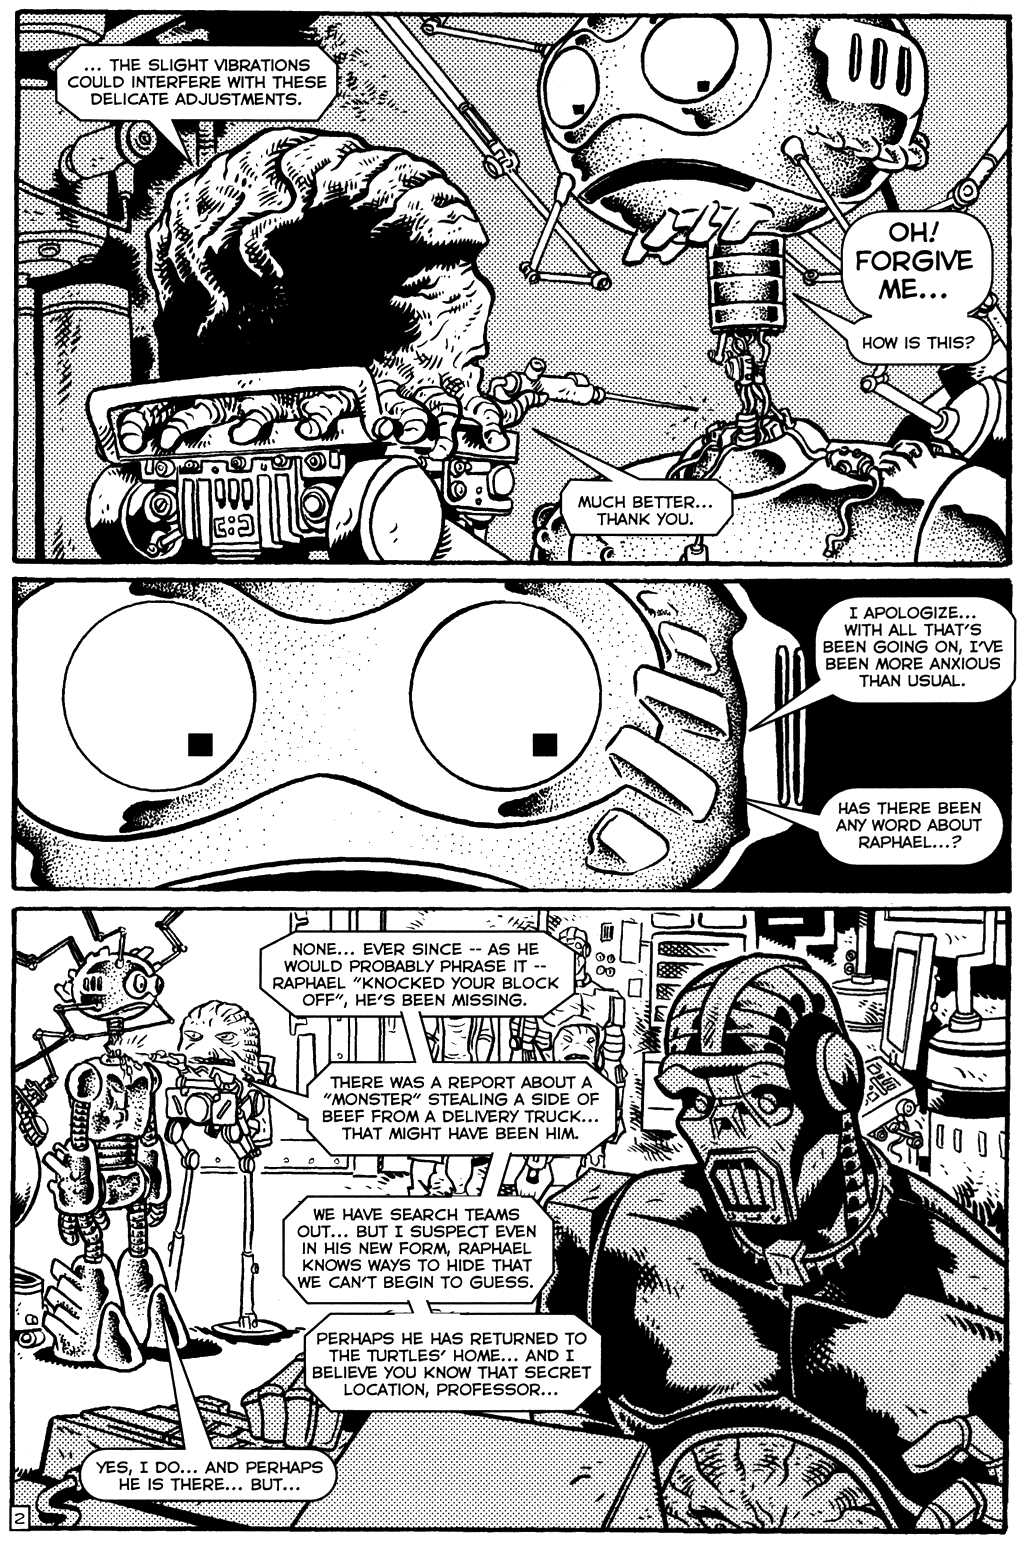 TMNT: Teenage Mutant Ninja Turtles issue 18 - Page 4